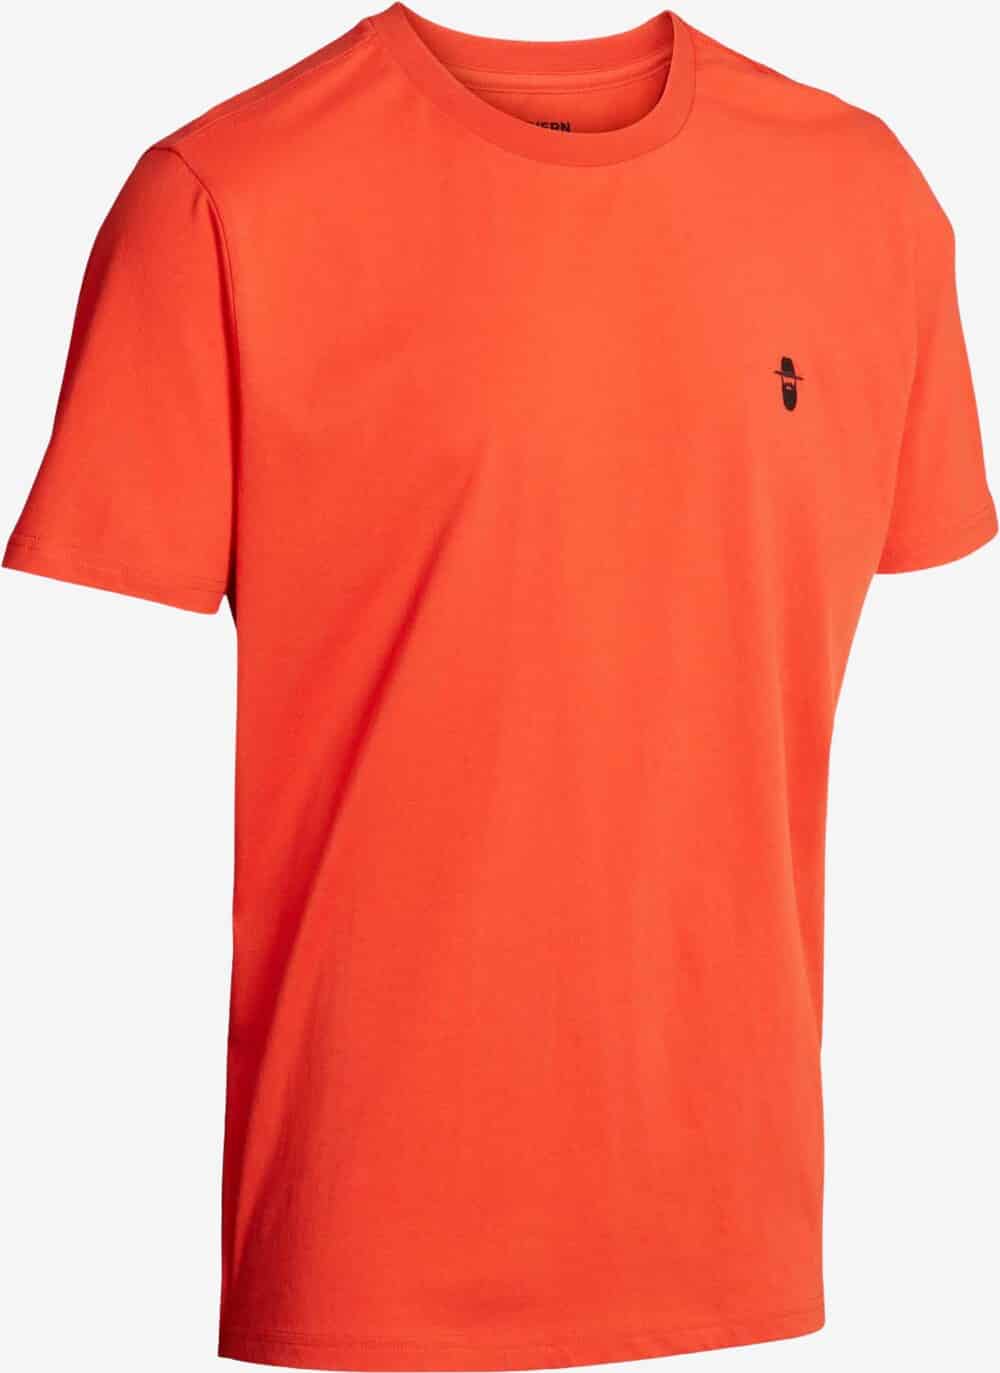 Se Northern Hunting - Karl T-shirt (Orange) - M hos Friluft.dk